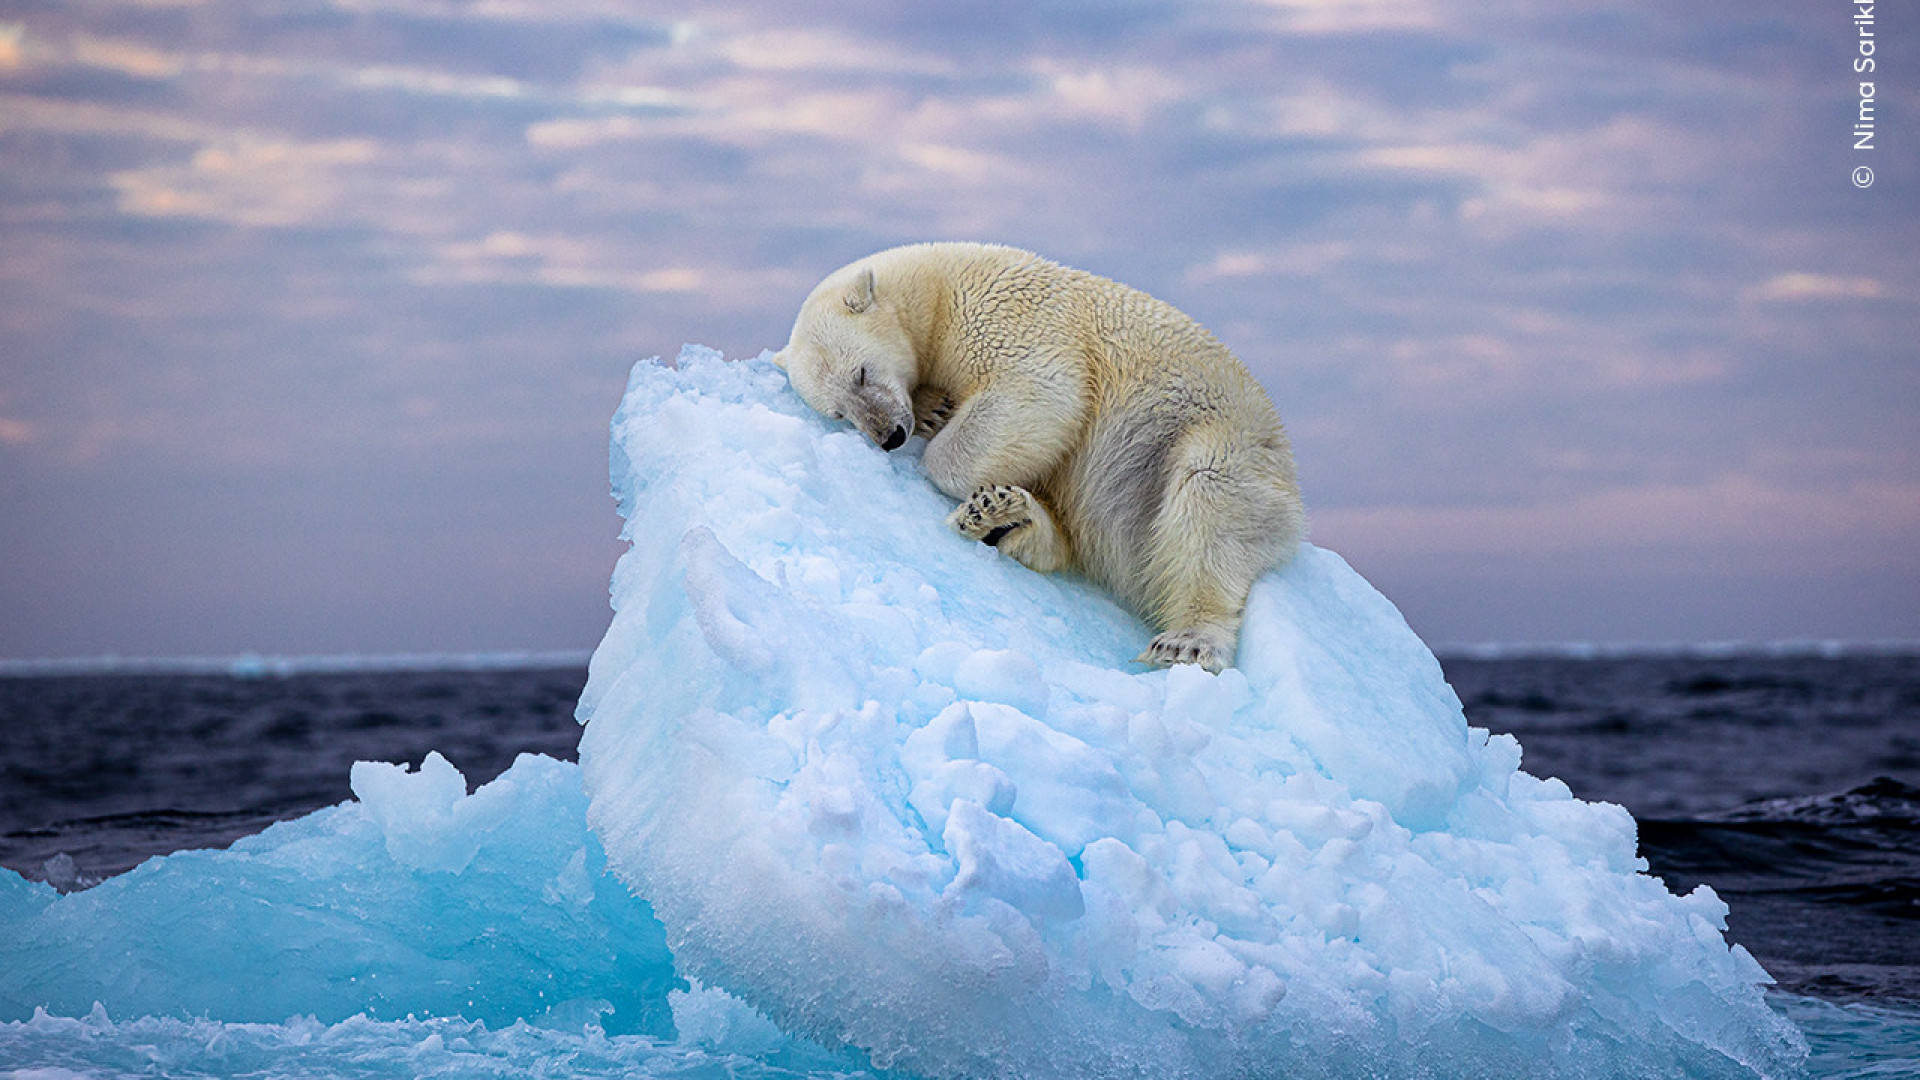  Fotógrafo vence prêmio do público com foto de urso polar dorminhoco